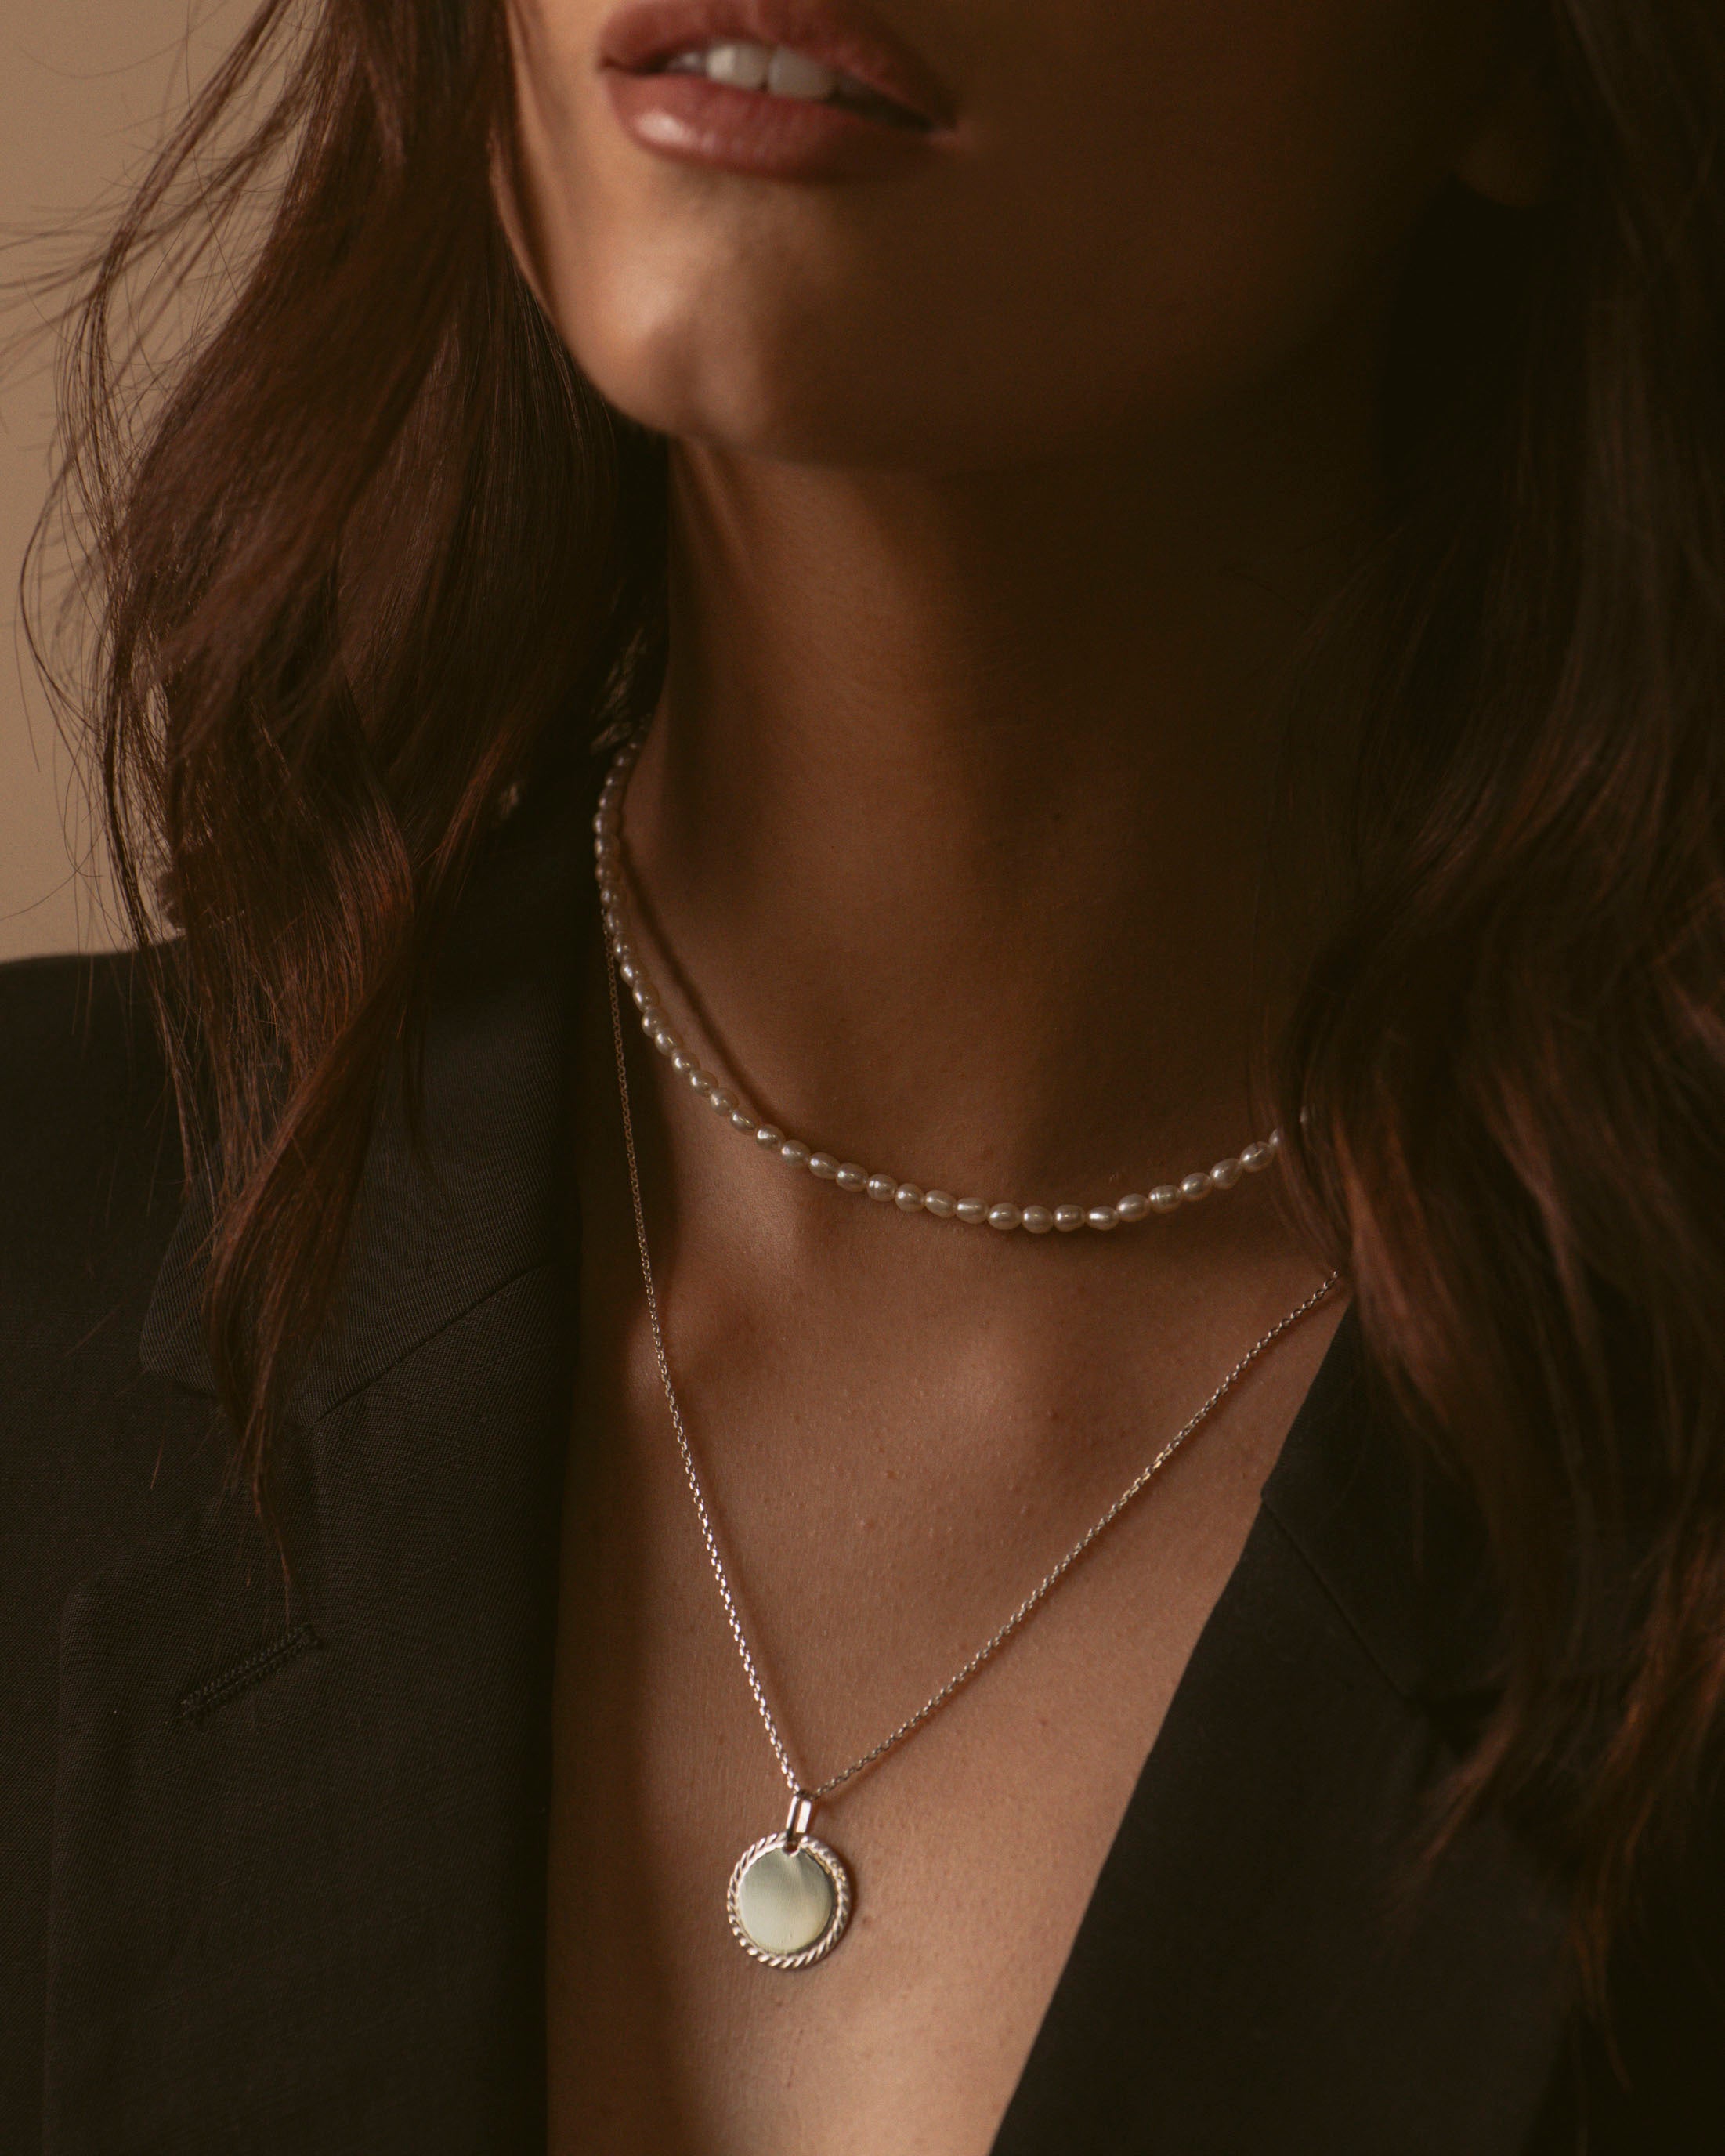 Association de deux colliers en argent massif 925, composée d'un collier full perles de culture, et un collier en chaîne forçat avec une médaille aux contours torsadés, fabriqués en France.